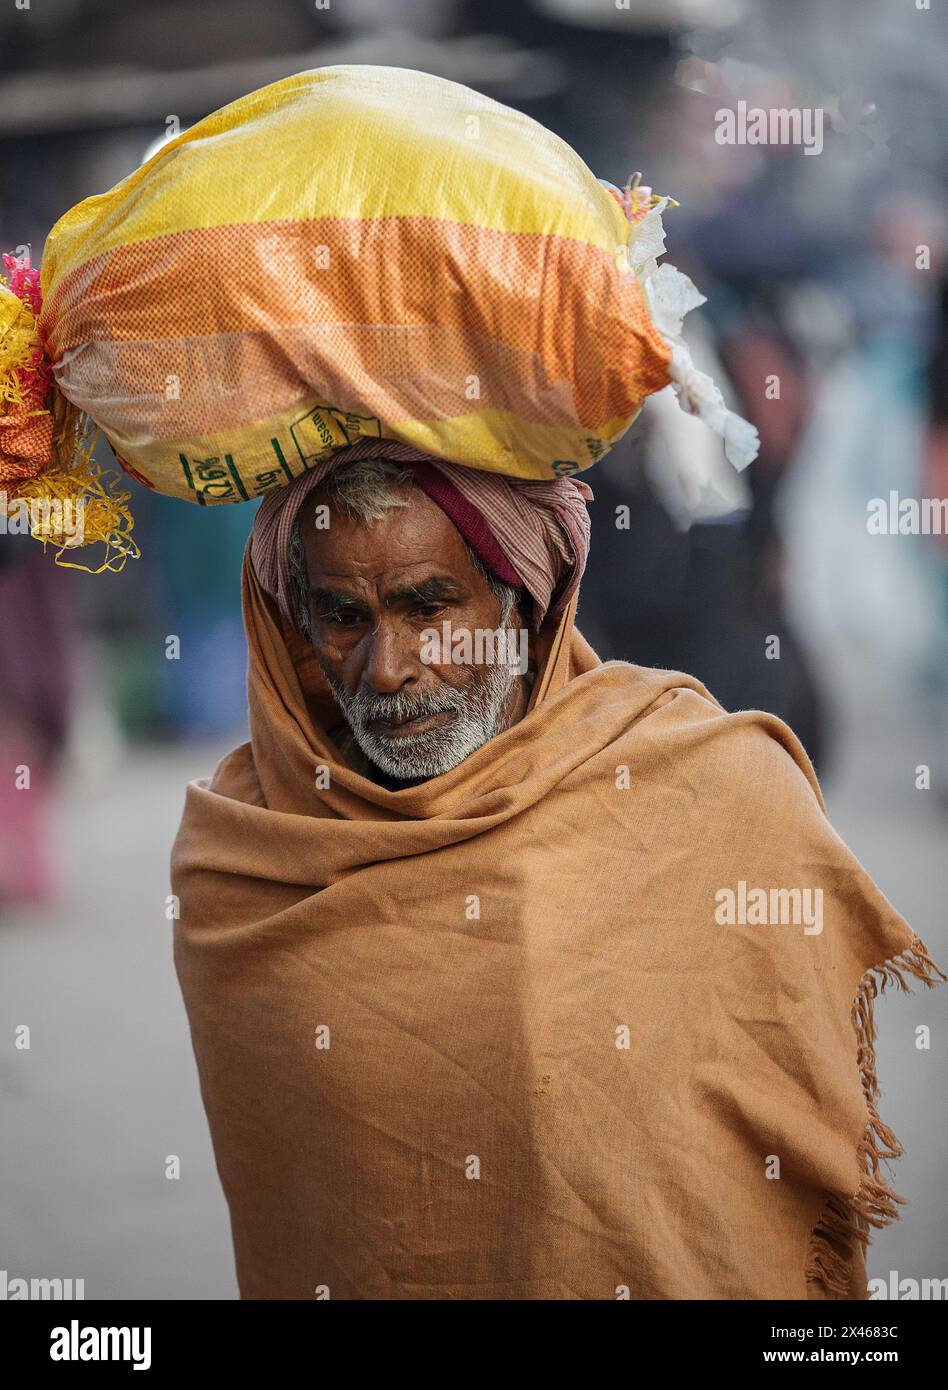 Pilger, der in einem Sack auf dem Kopf läuft, in Varanasi, Indien. Stockfoto